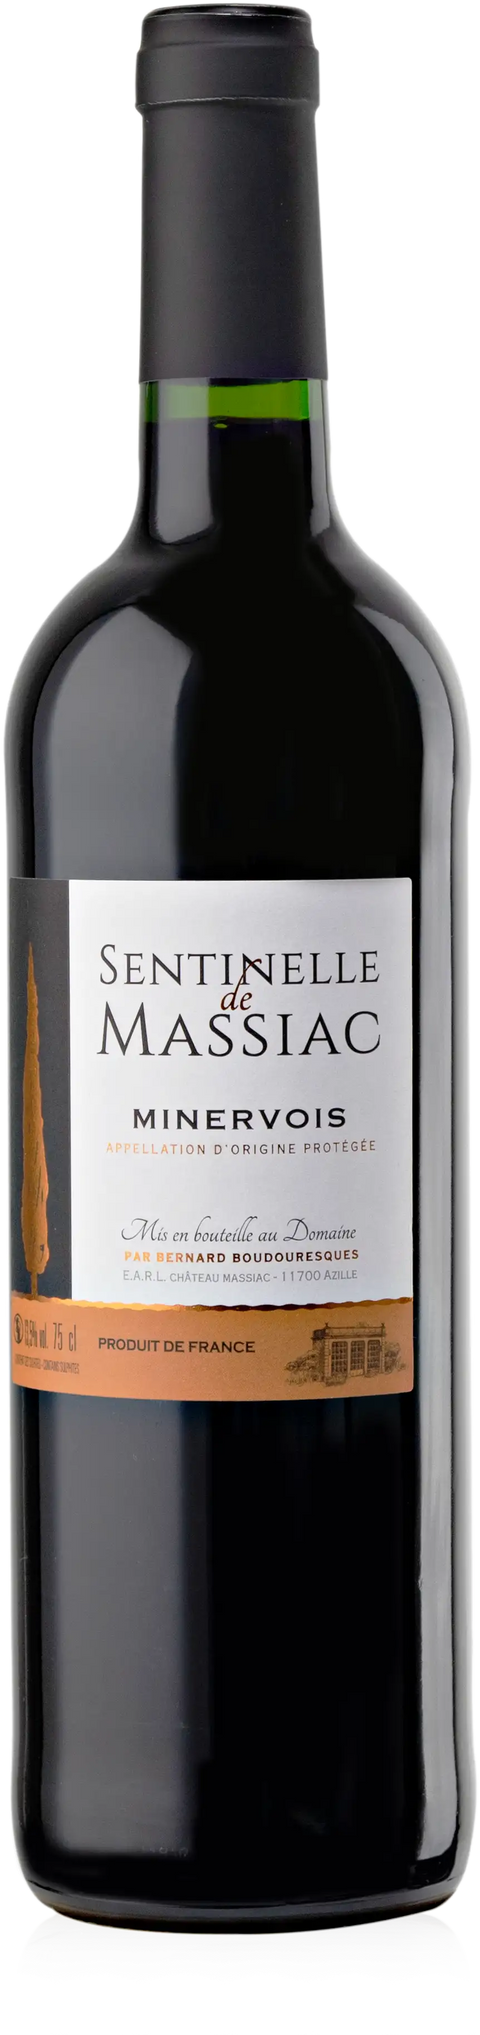 2020 Domaine de Massiac "Sentinelle de Massiac" Minervois, Languedoc-Roussillon, France